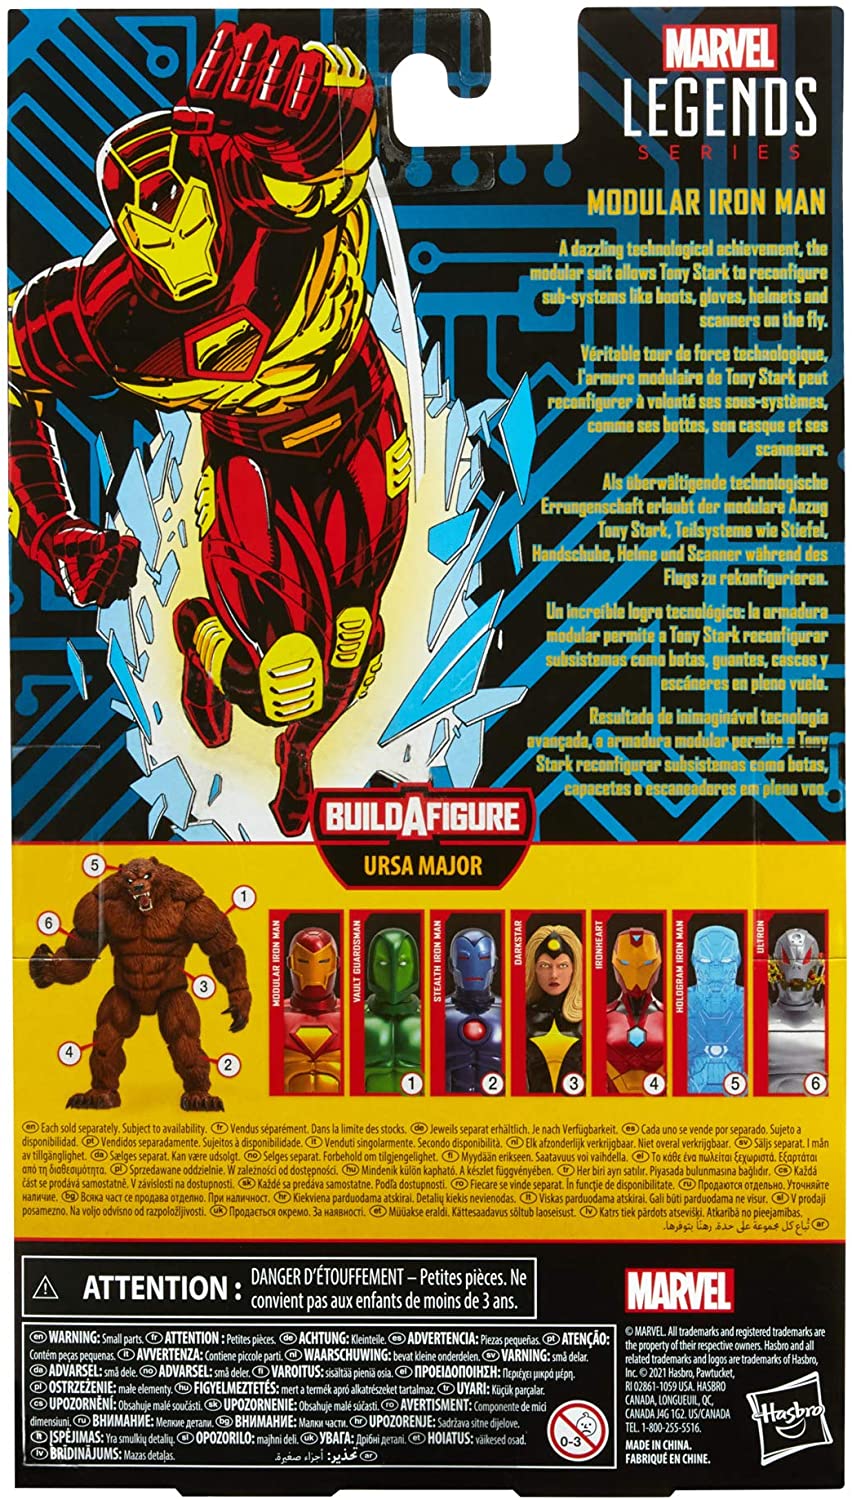 Hasbro Marvel Legends Series 6-Zoll modulares Iron Man Actionfiguren-Spielzeug, inklusive 4 Zubehörteilen und 1 Build-A-Figure-Teil, Premium-Design und Artikulation Mehrfarbig, F0355 Mehrfarbig, F0355